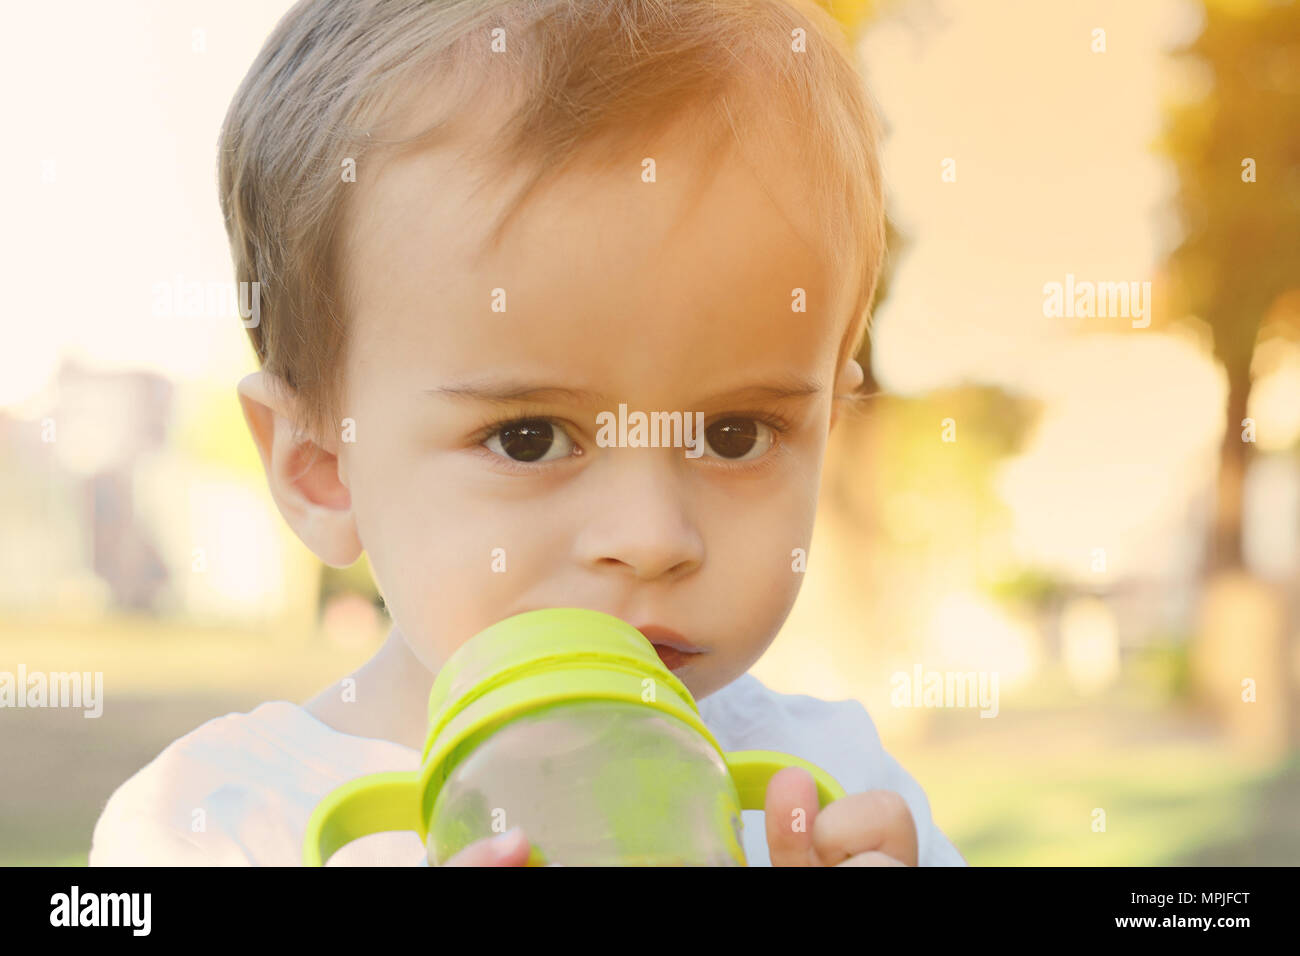 Cute Baby Boy Drinking Milk Bottle in a park Stock Photo